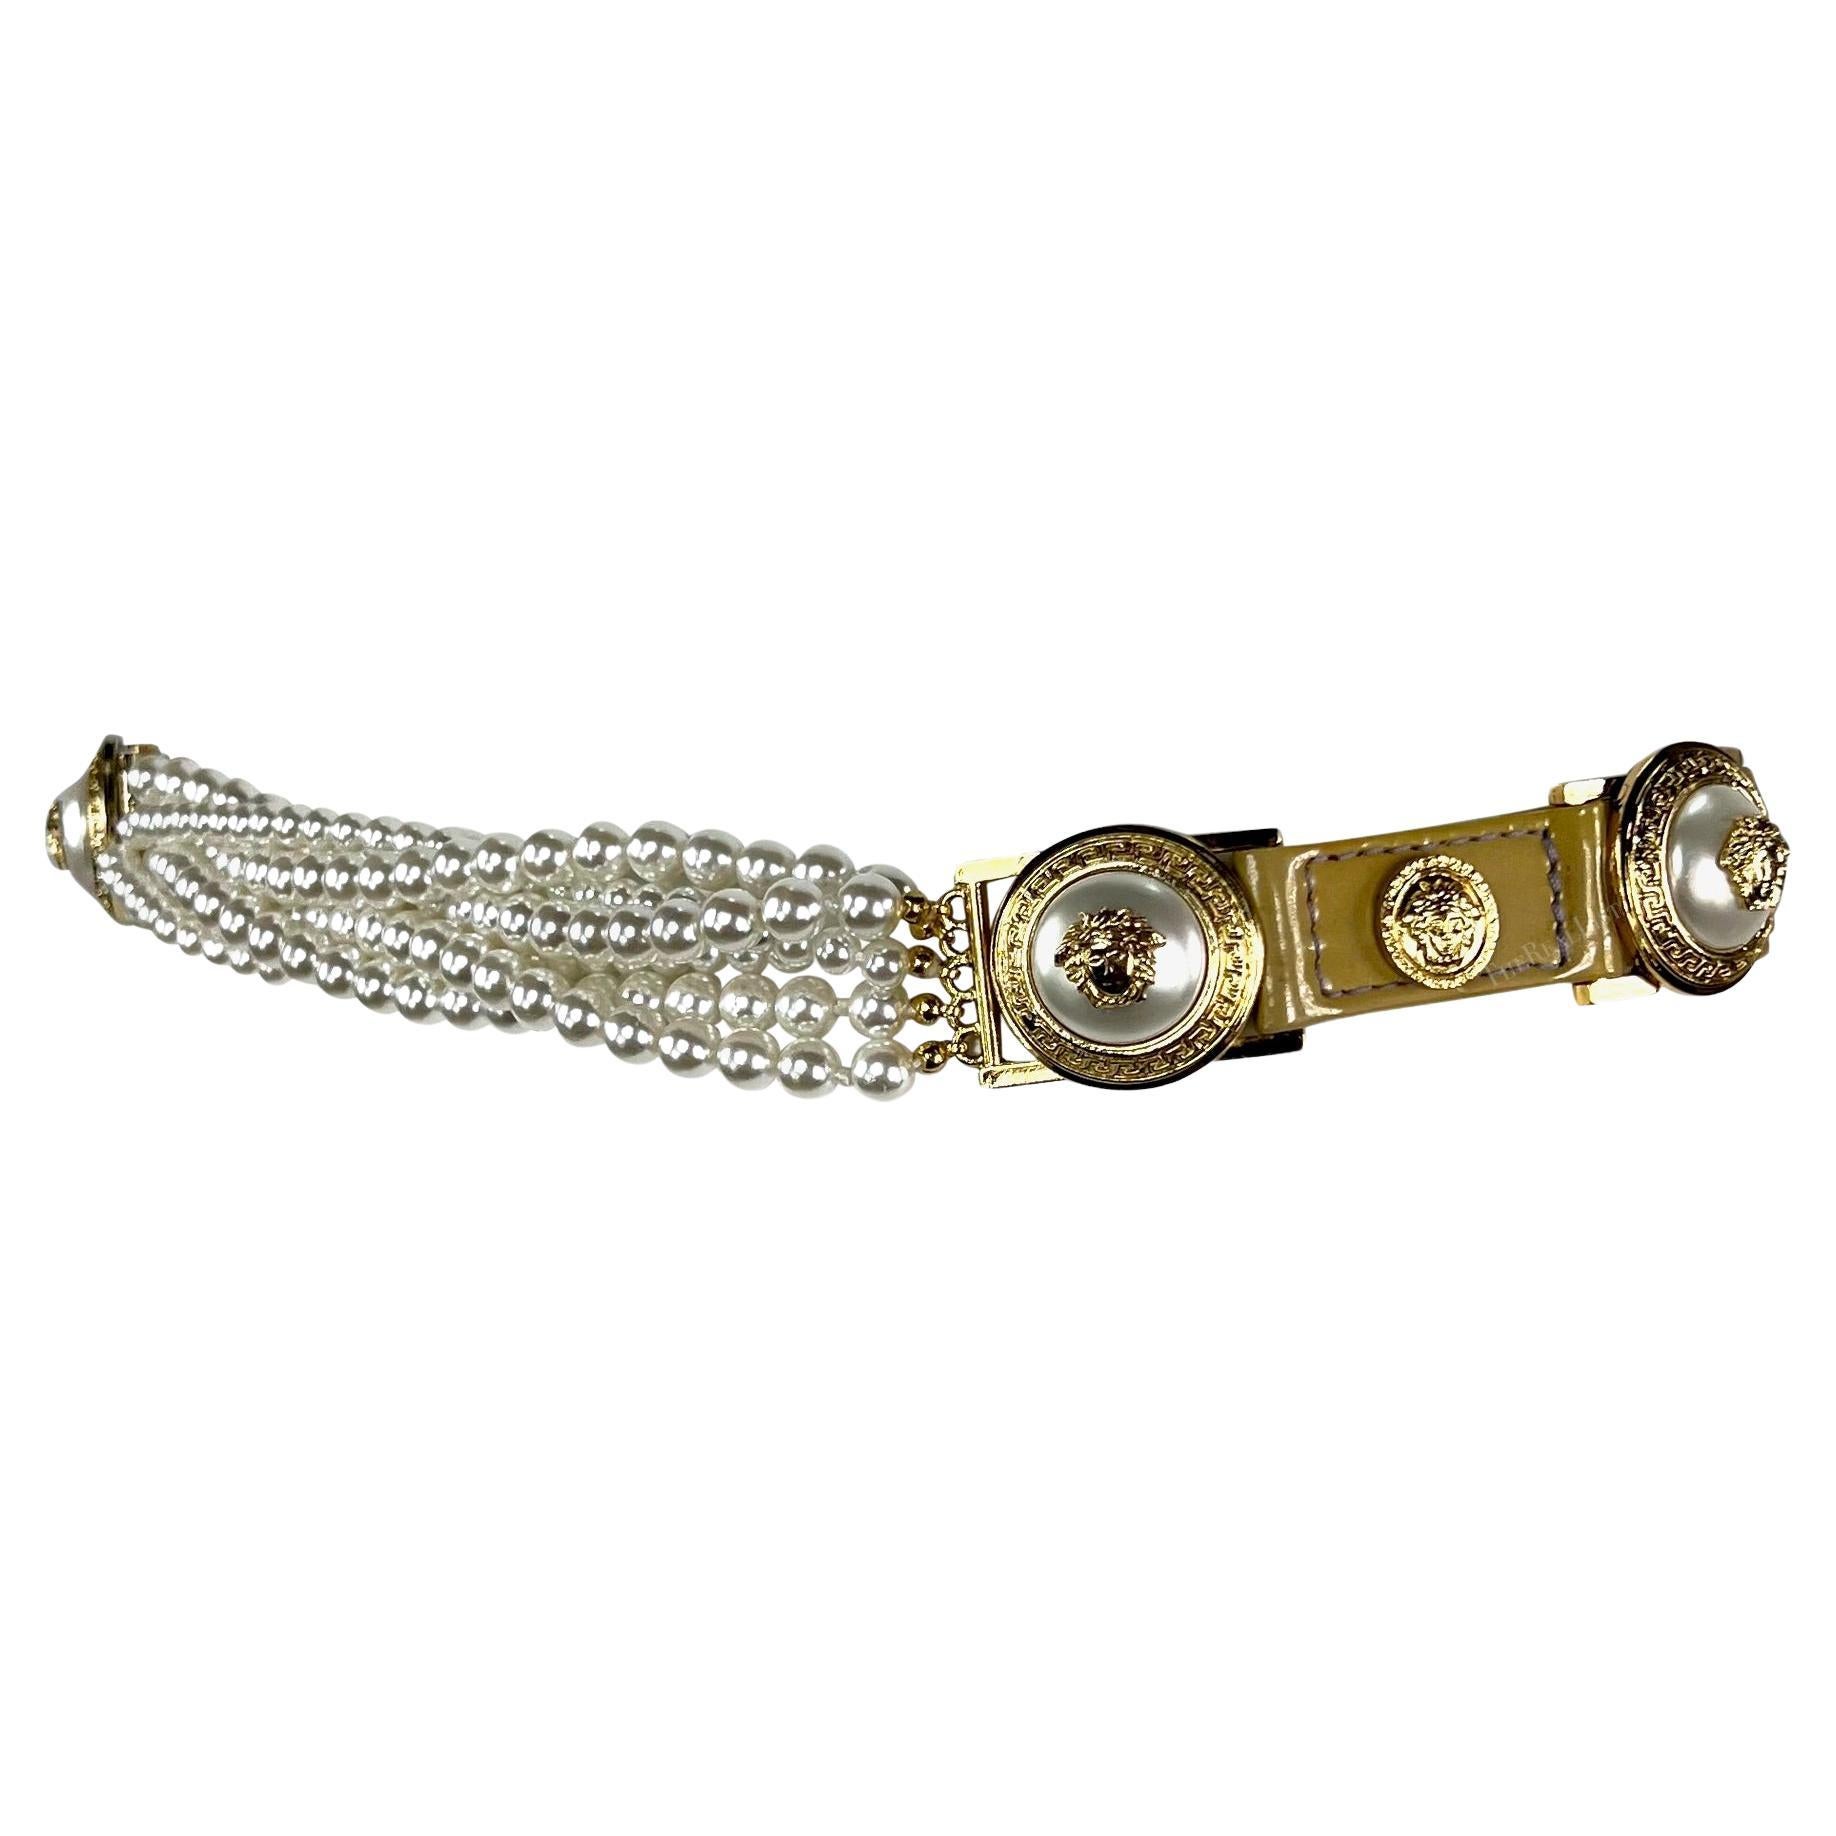  Issue de la collection automne-hiver 1994, cette ceinture chic en cuir verni beige de Gianni Versace présente des lanières en cuir verni beige ornées d'emblèmes de la Méduse de Versace en or et en fausses perles sur l'ensemble de la ceinture.